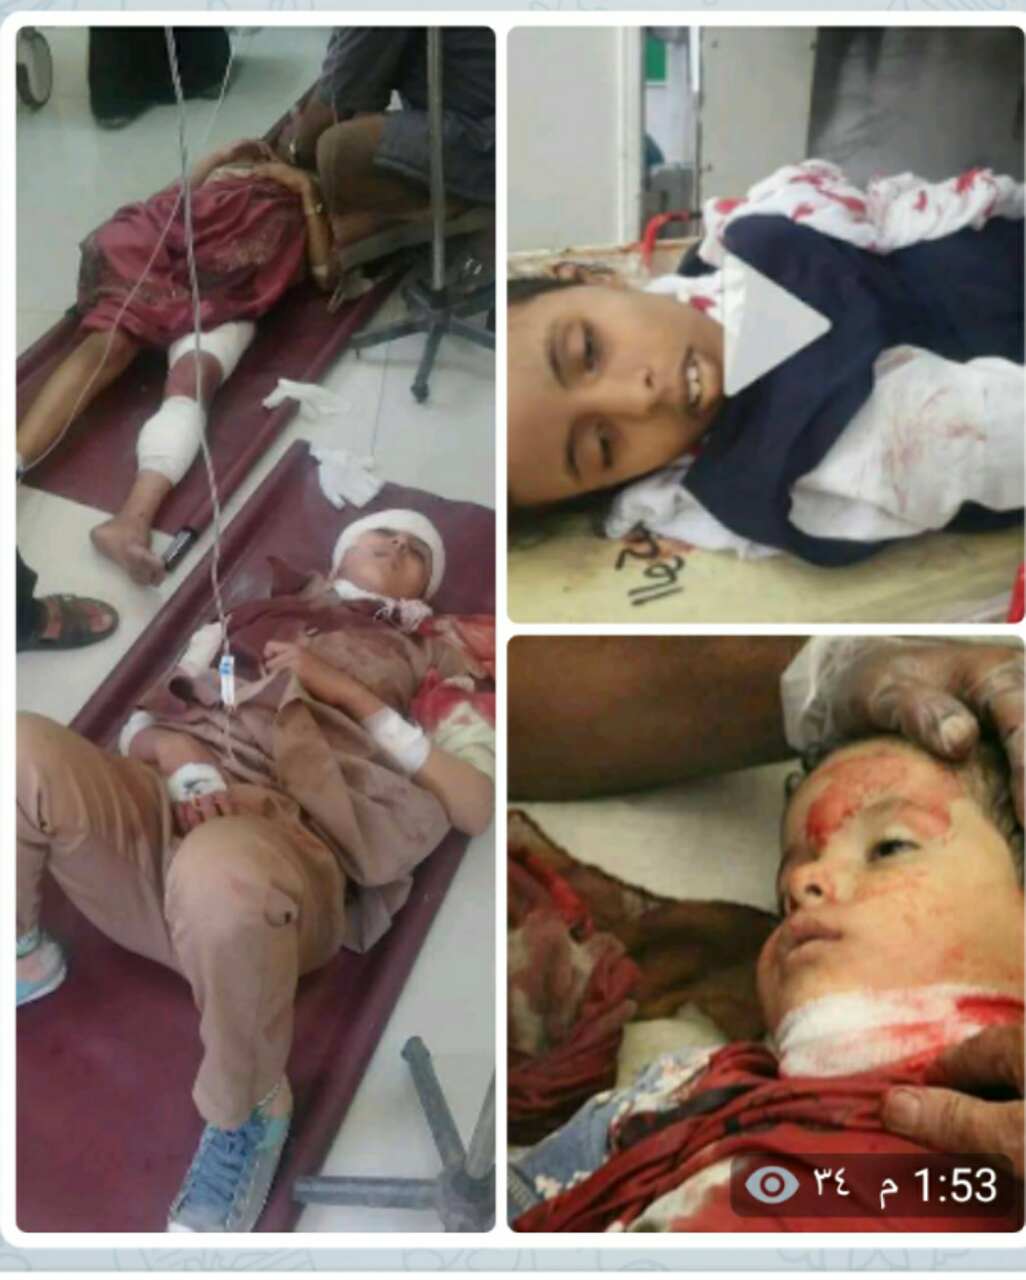  تعز| استشهاد وإصابة 4 طالبات بقذيفة حوثية واستشهاد طفل برصاص الخارجين عن القانون